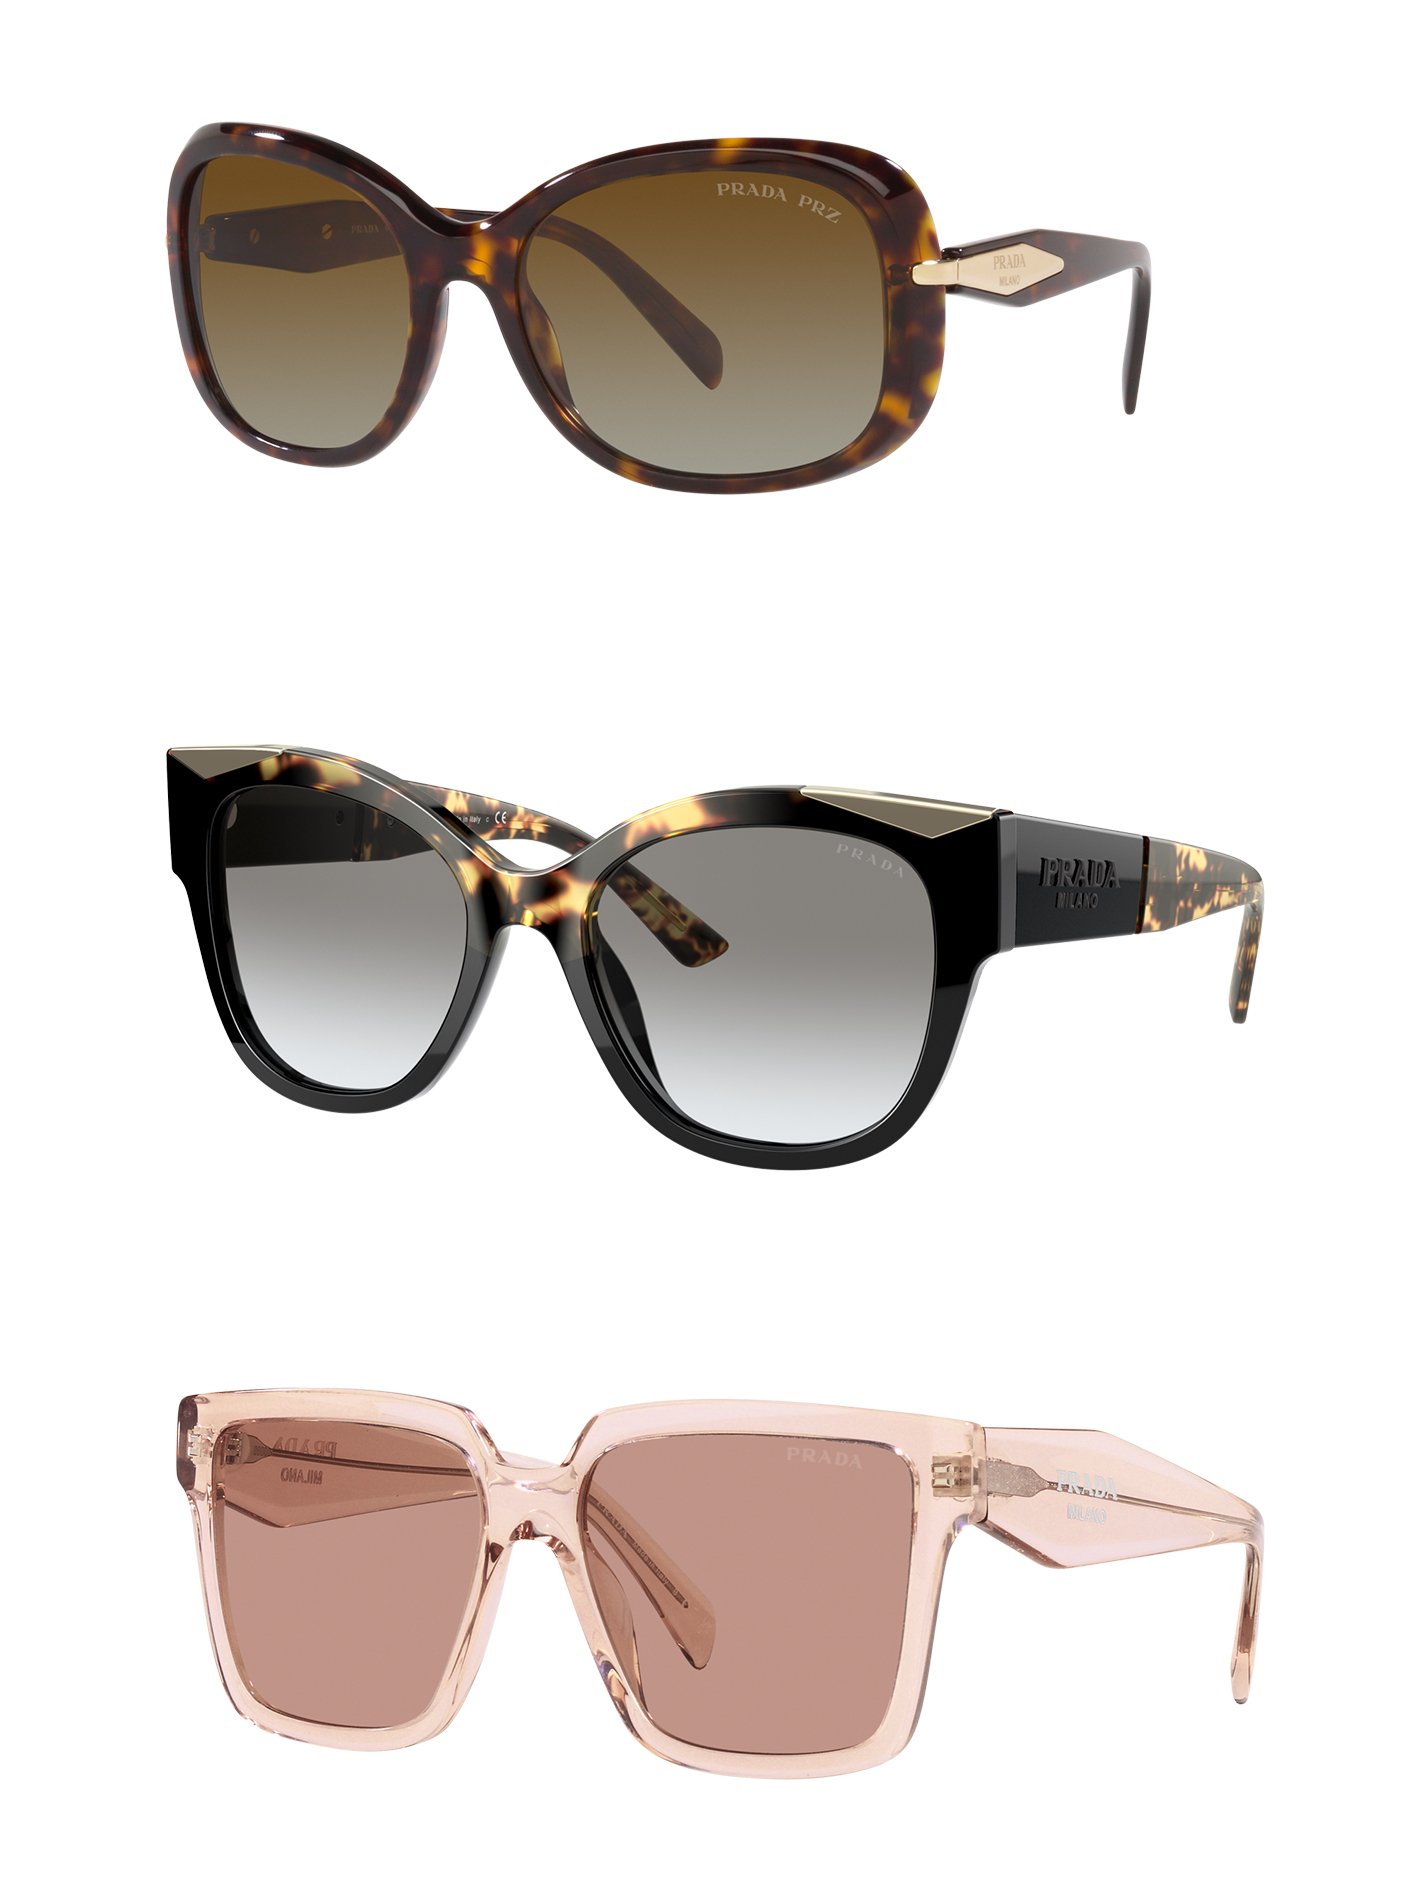 zu sehen sind drei modische elegante Sonnenbrillen von Prada